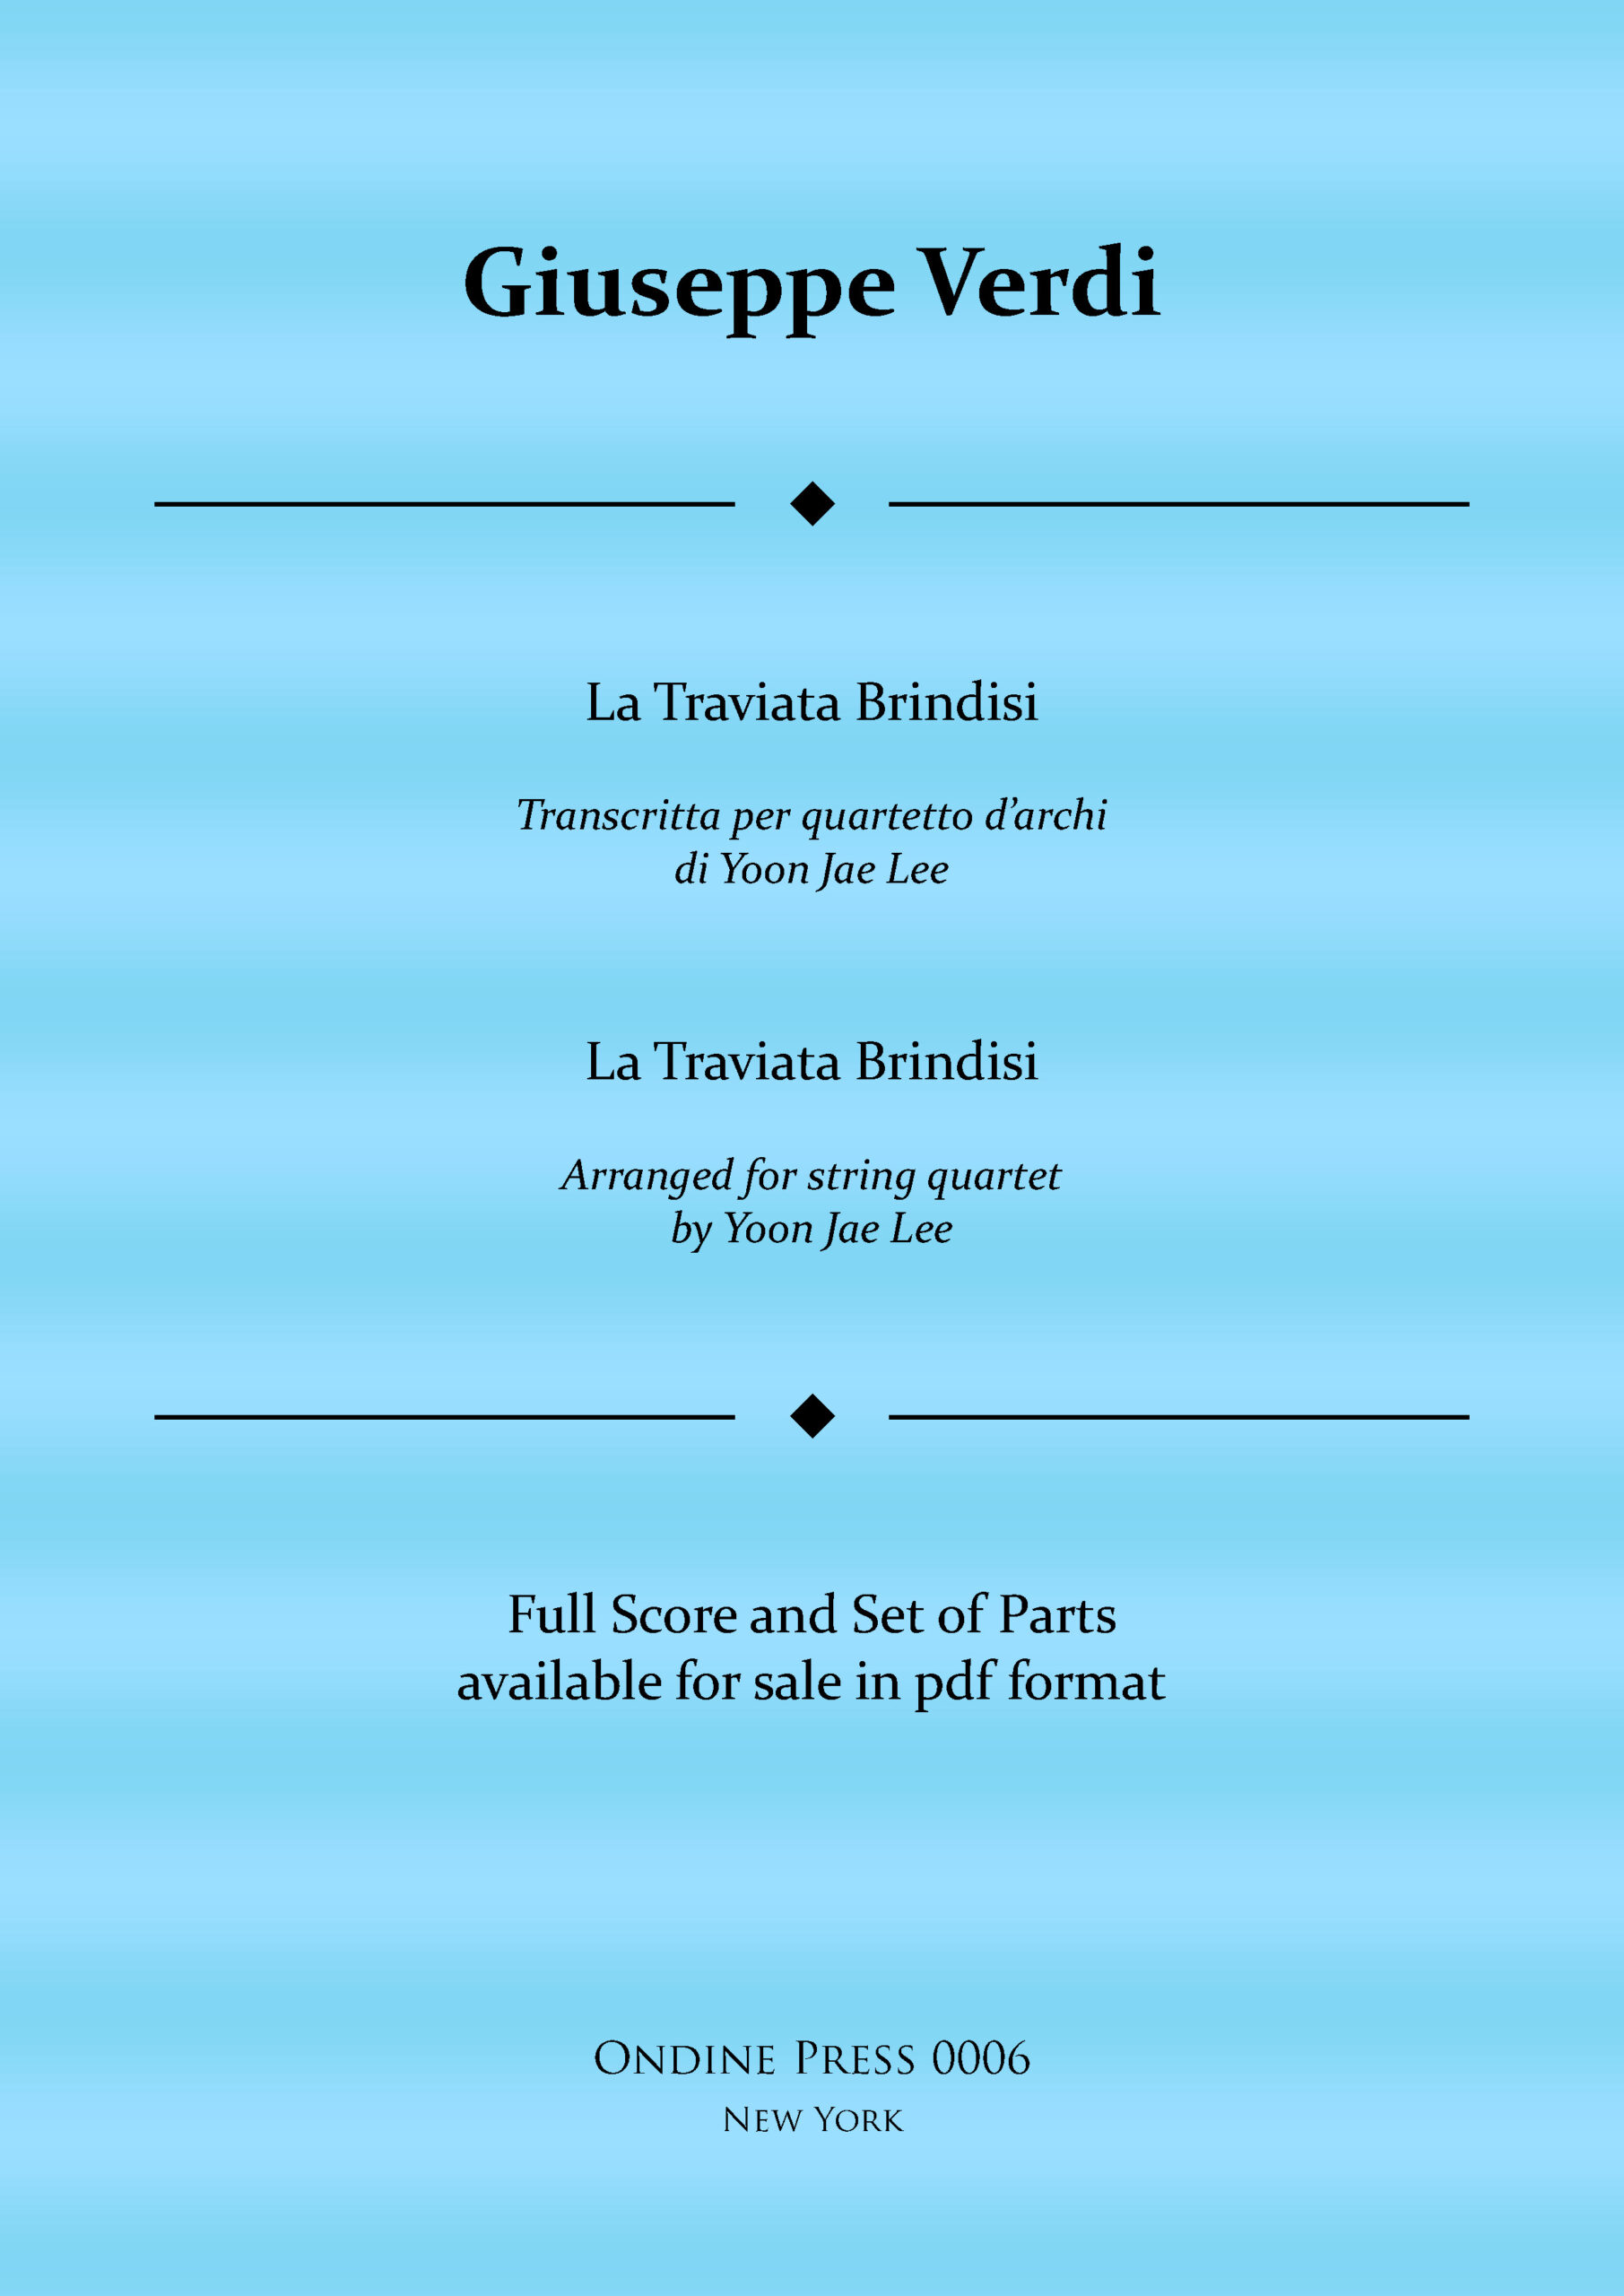 Verdi La Traviata Brindisi web cover scaled